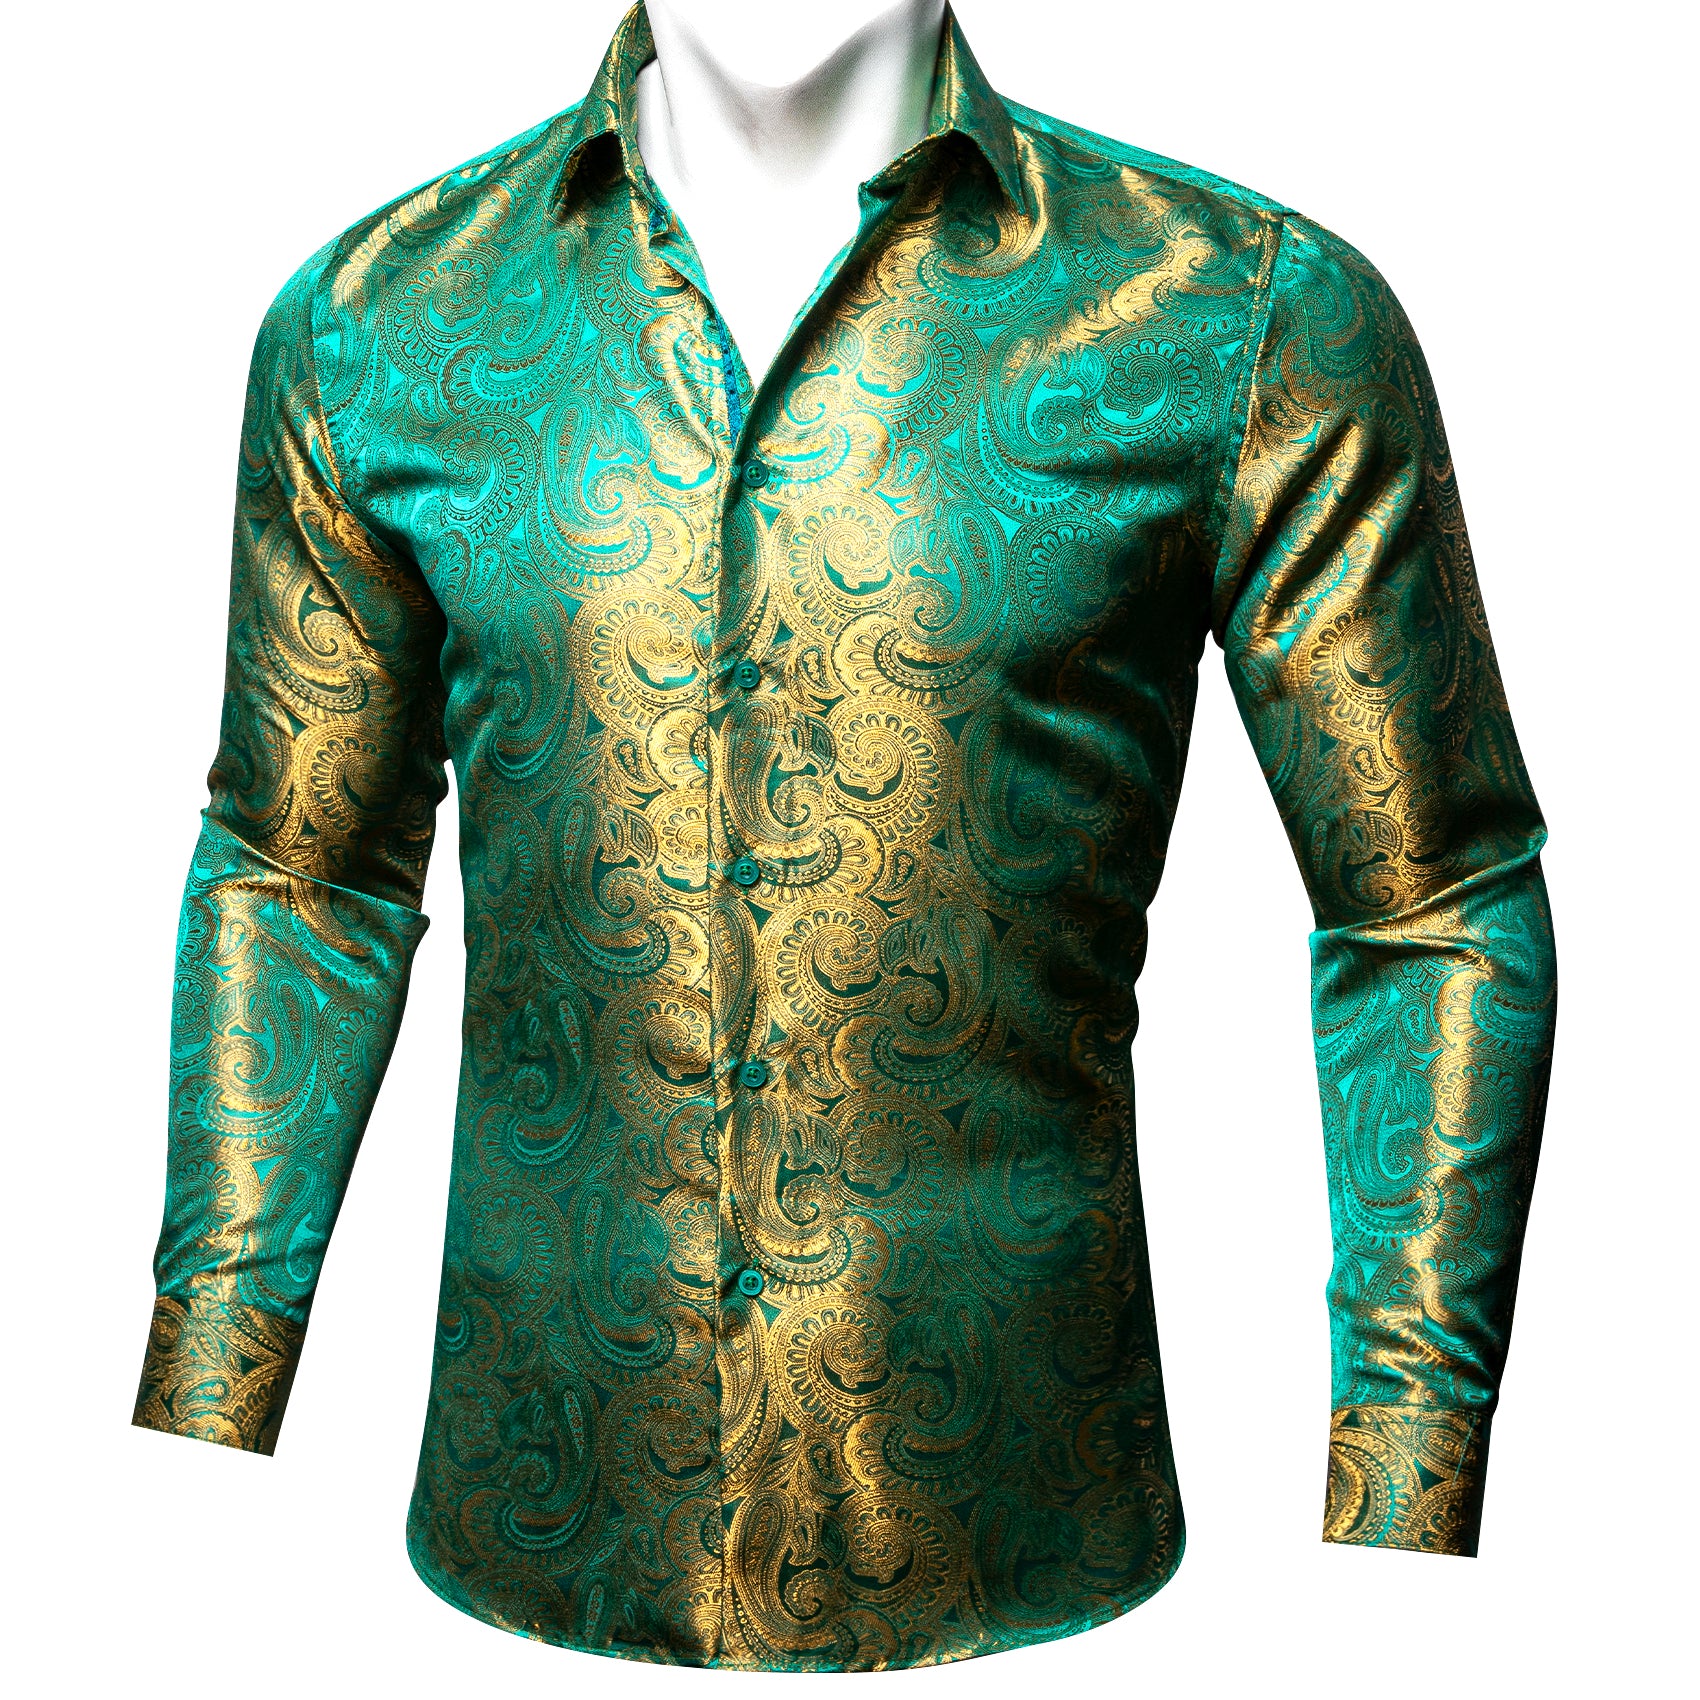 dress shirts Green shirt gold jacquard paisley shirts  gold and green shirt